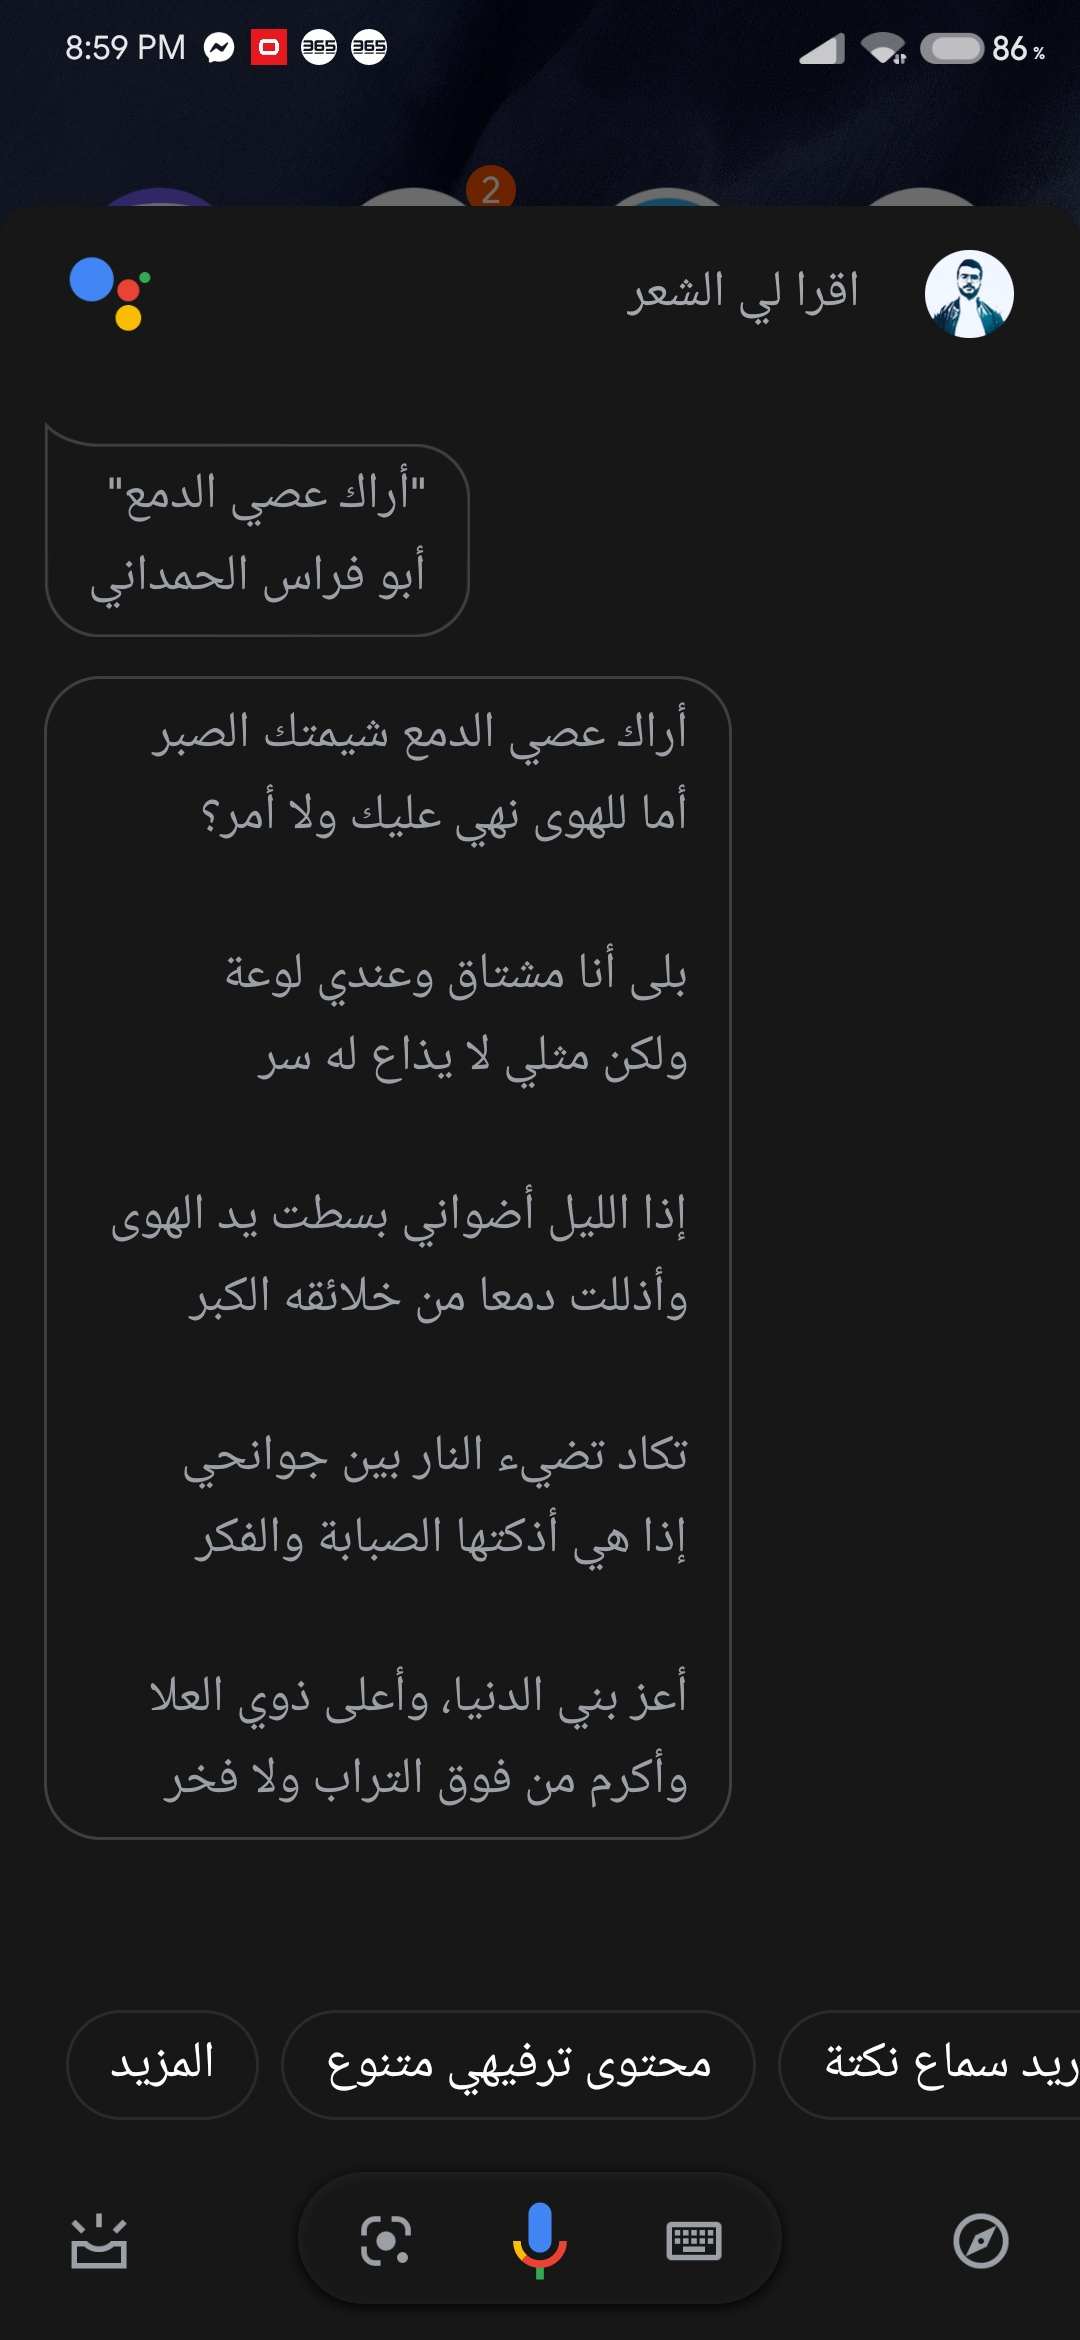 مساعد Google على الاندرويد يقرأ الشعر بالعربي! تعلم كيف ؟ Screen10